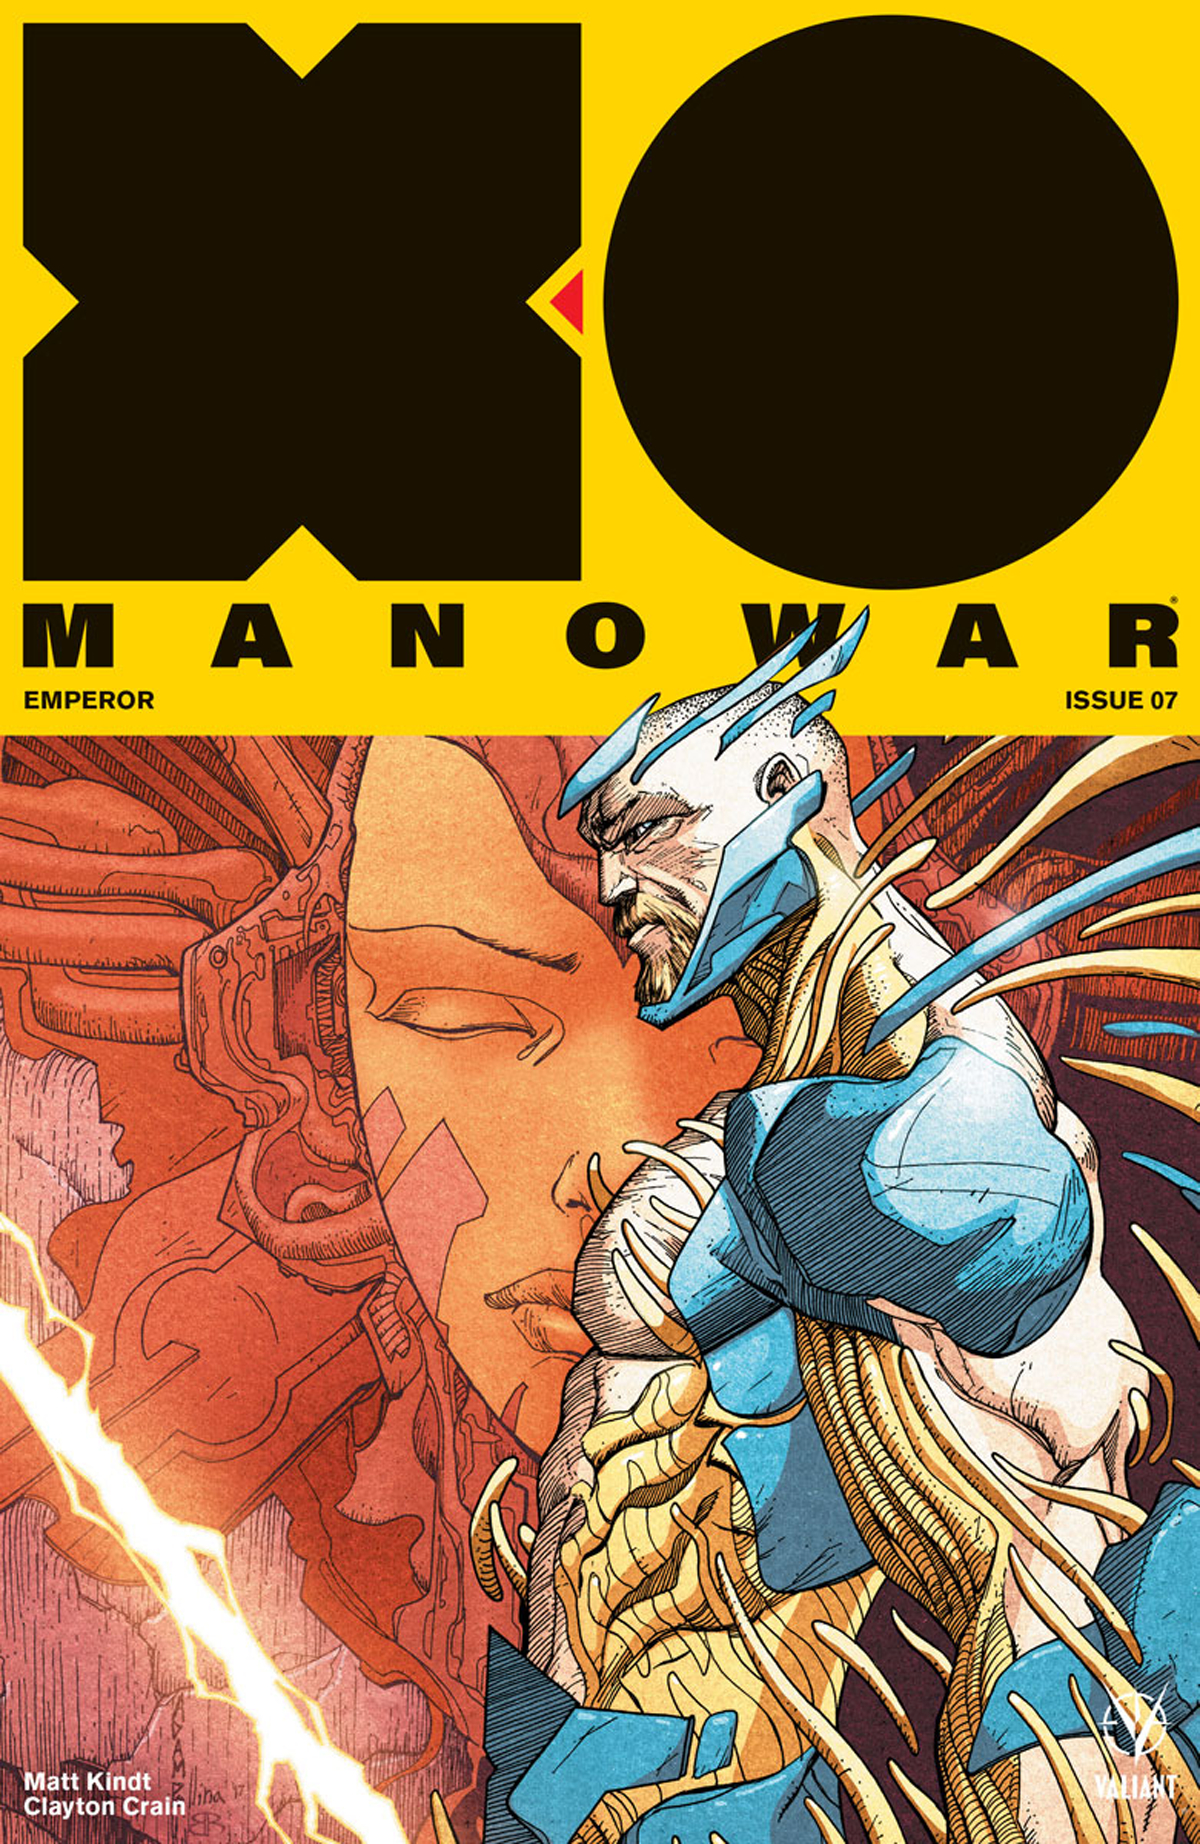 X-O MANOWAR (2017) #7 (NEW ARC) CVR B POLLINA